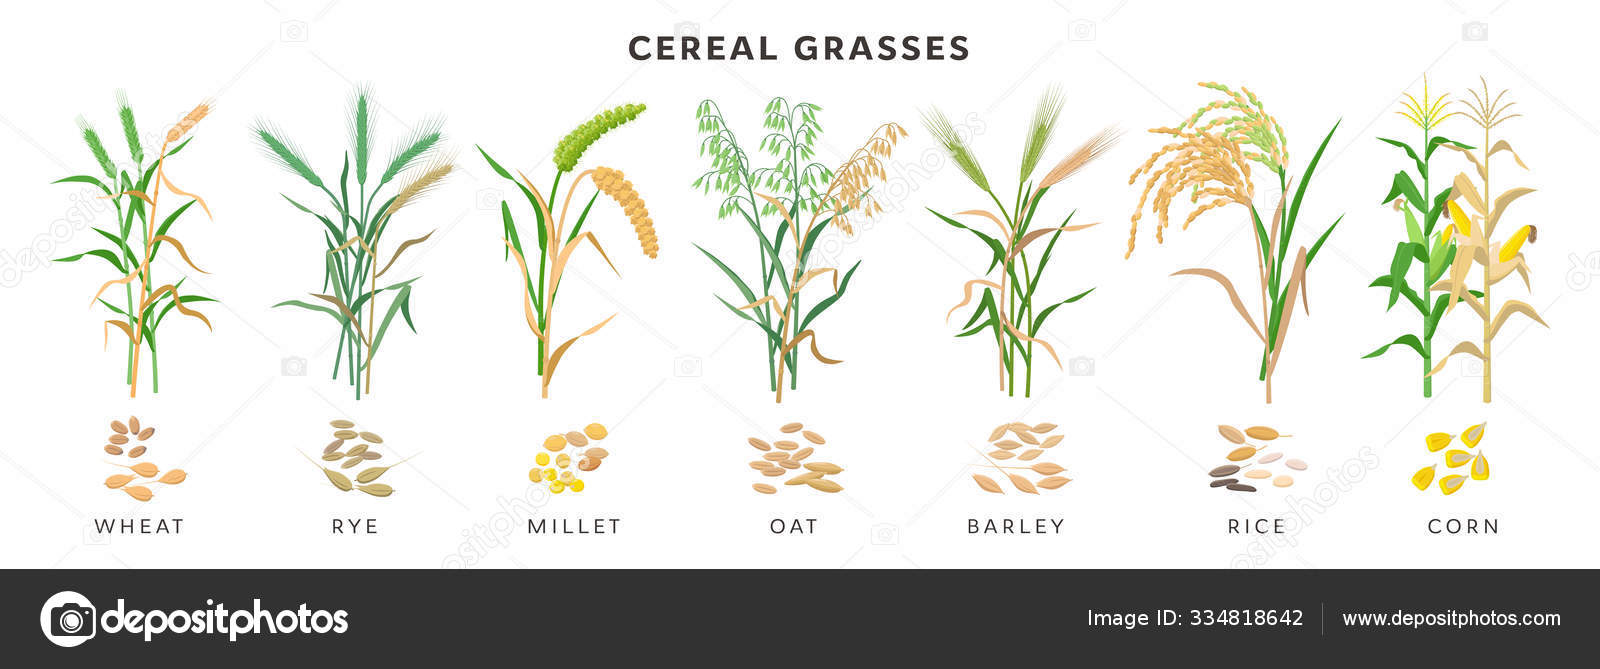 cereals plants